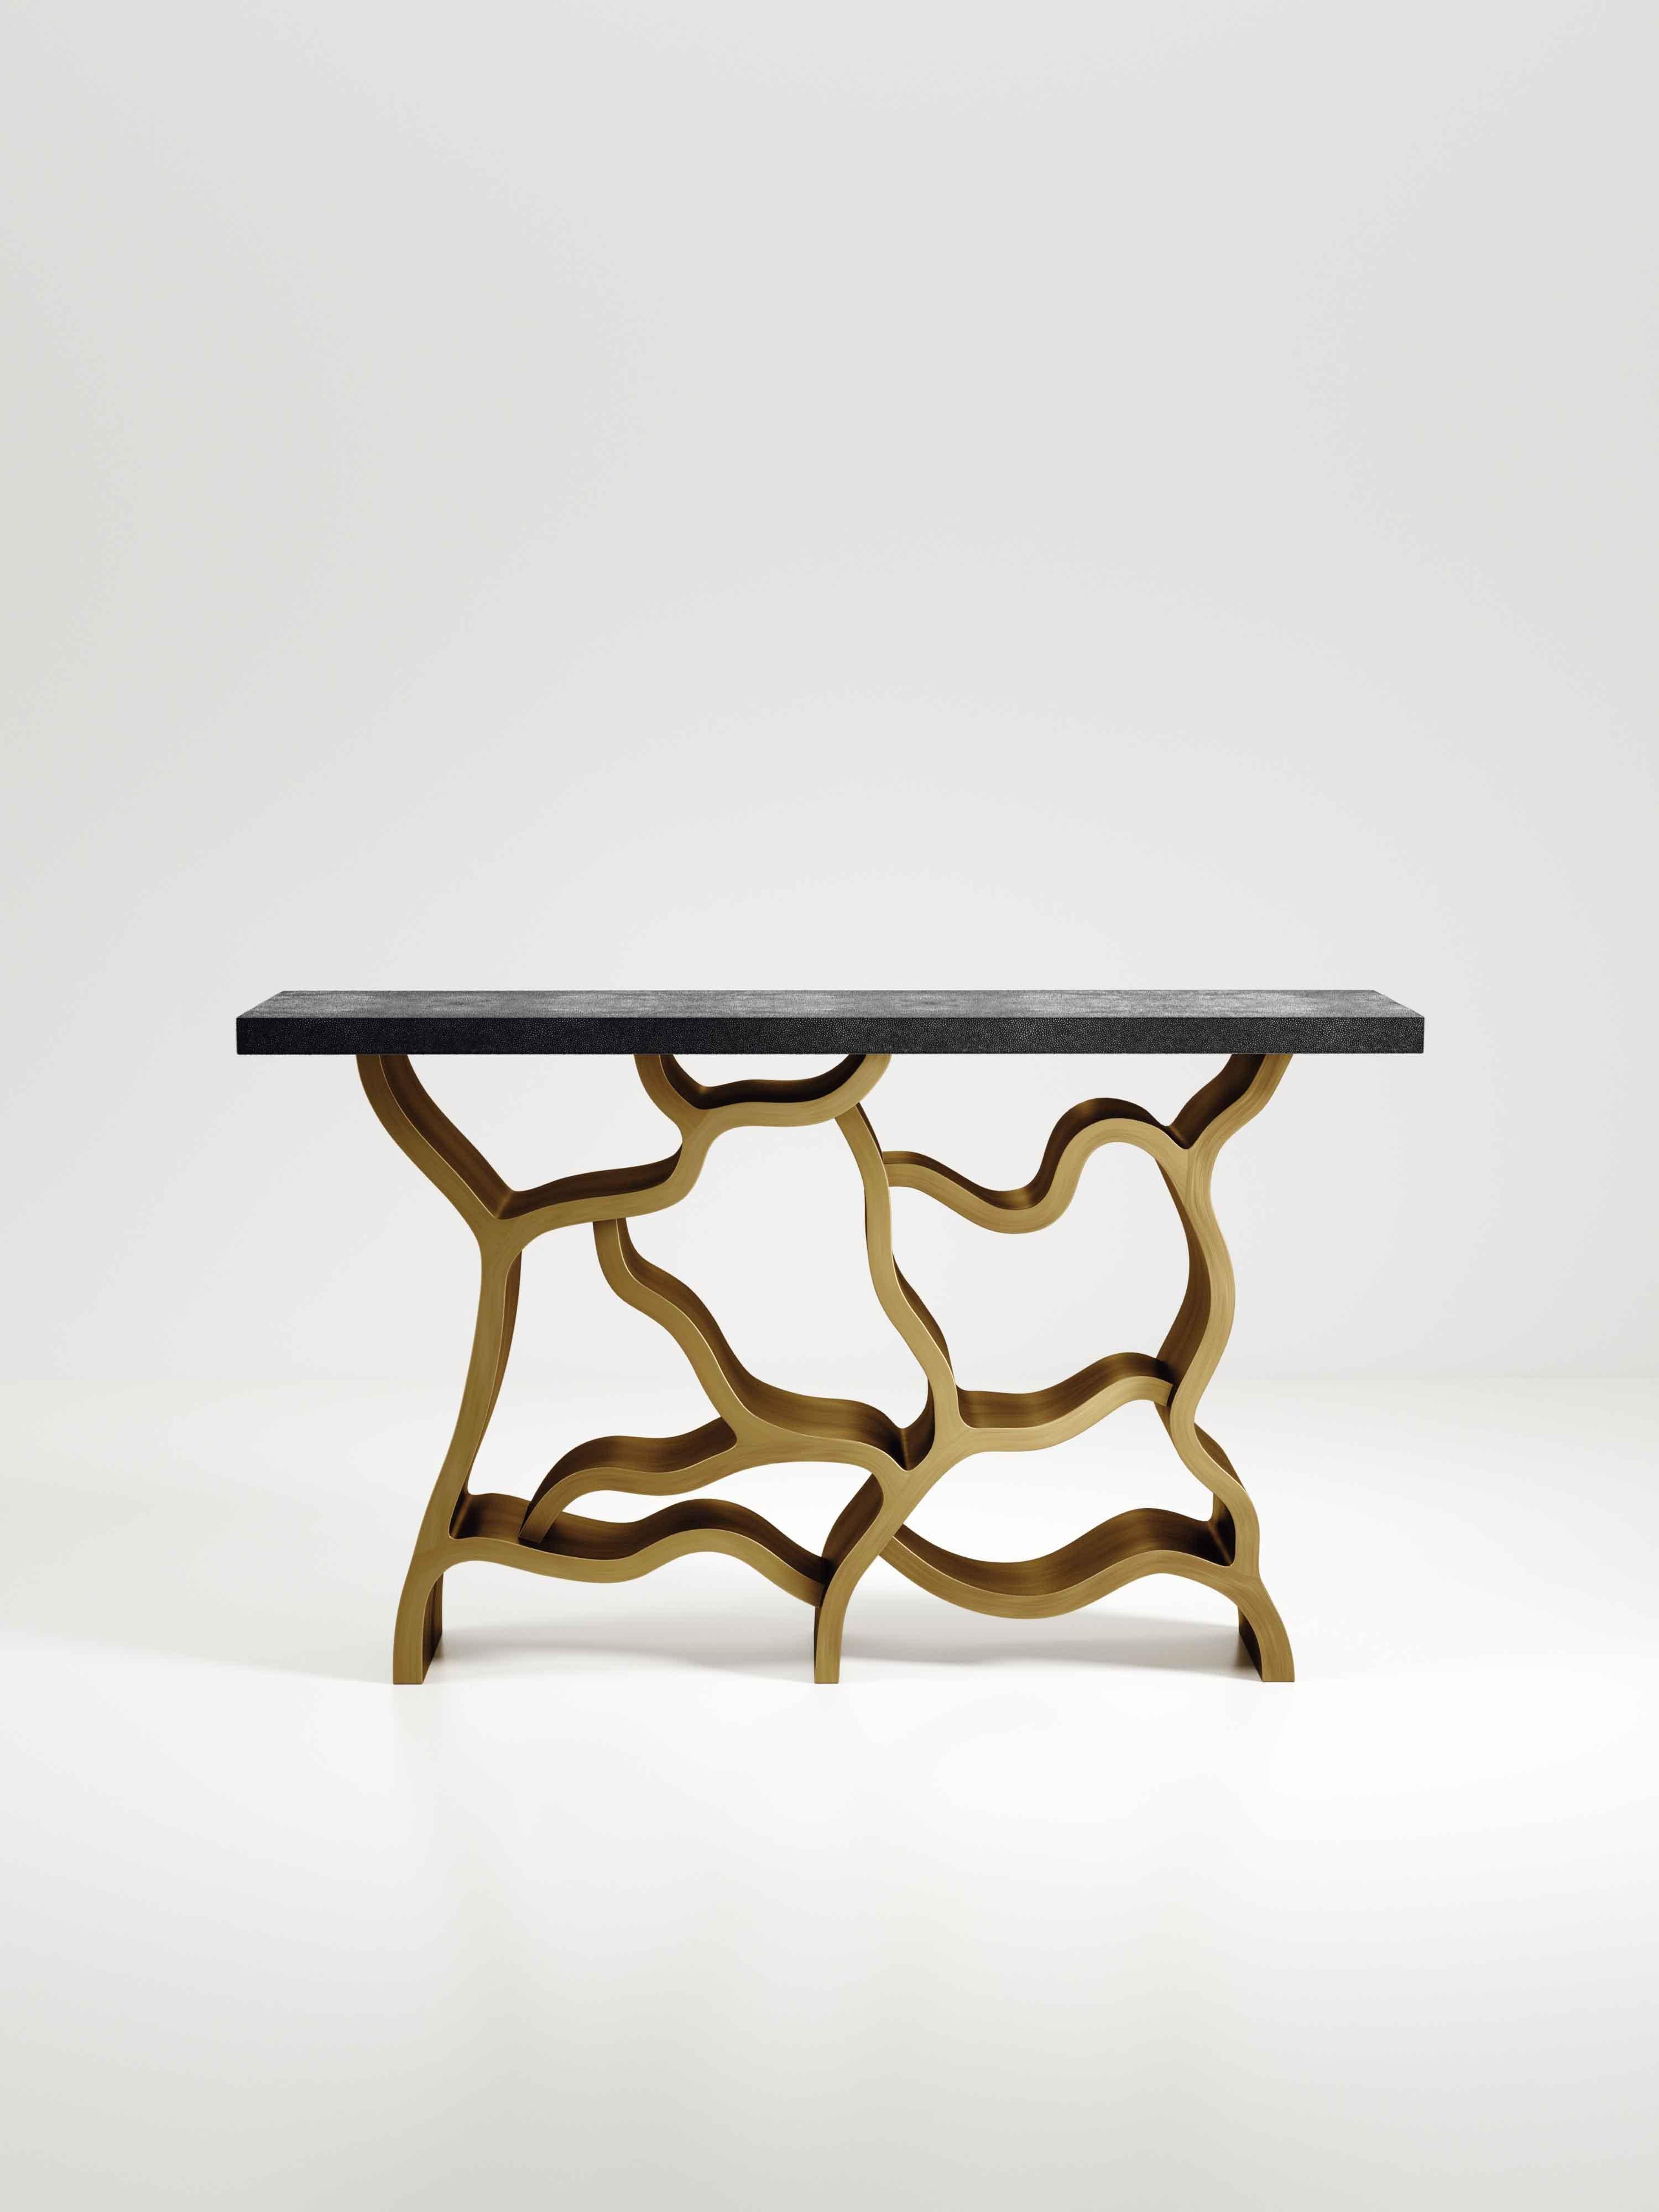 La table console Leaf de Kifu Paris est une pièce spectaculaire et organique. Le plateau rectangulaire incrusté de galuchat noir de charbon repose sur un socle en laiton bronze-patine qui évoque des branches entrelacées. Cette pièce a été conçue par